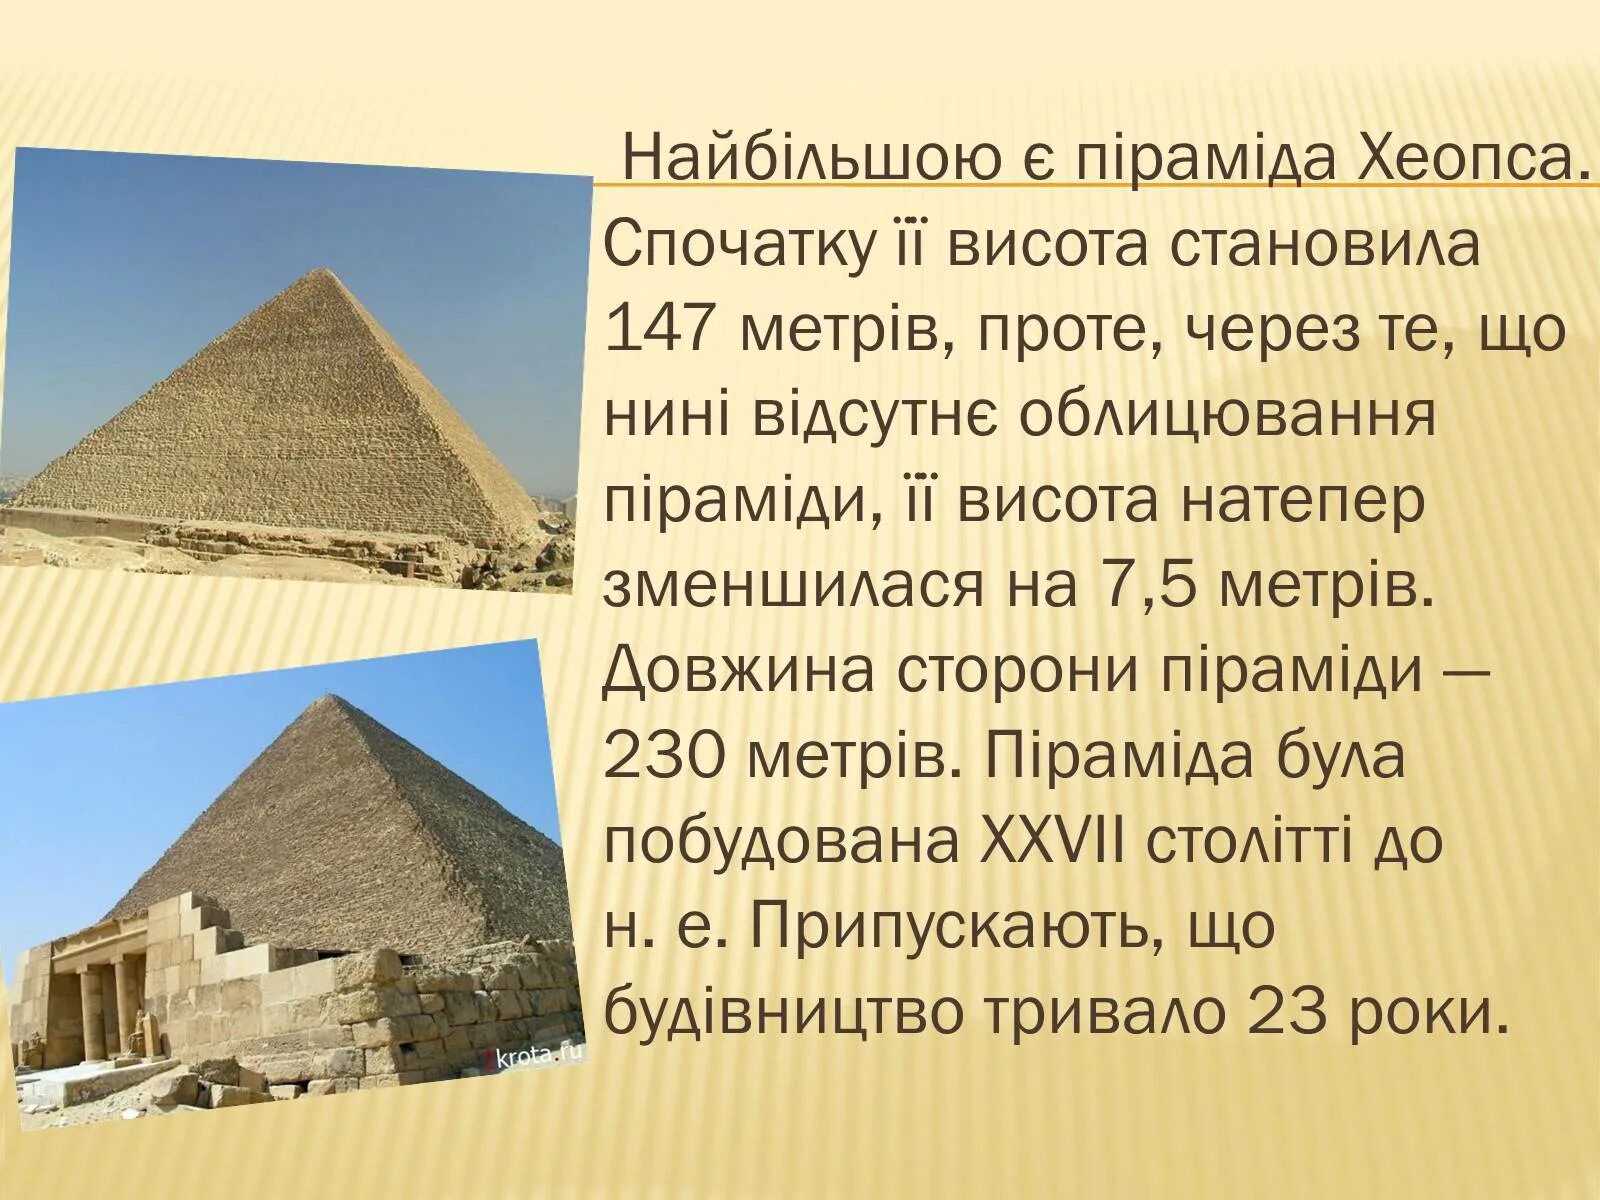 Два факта о пирамиде хеопса. Пирамида Хеопса 1 из 7 чудес света. Пирамида Хеопса окружающий мир 3 класс. Рассказ о пирамиде Хеопса. Пирамида Хеопса Хуфу семь чудес света.